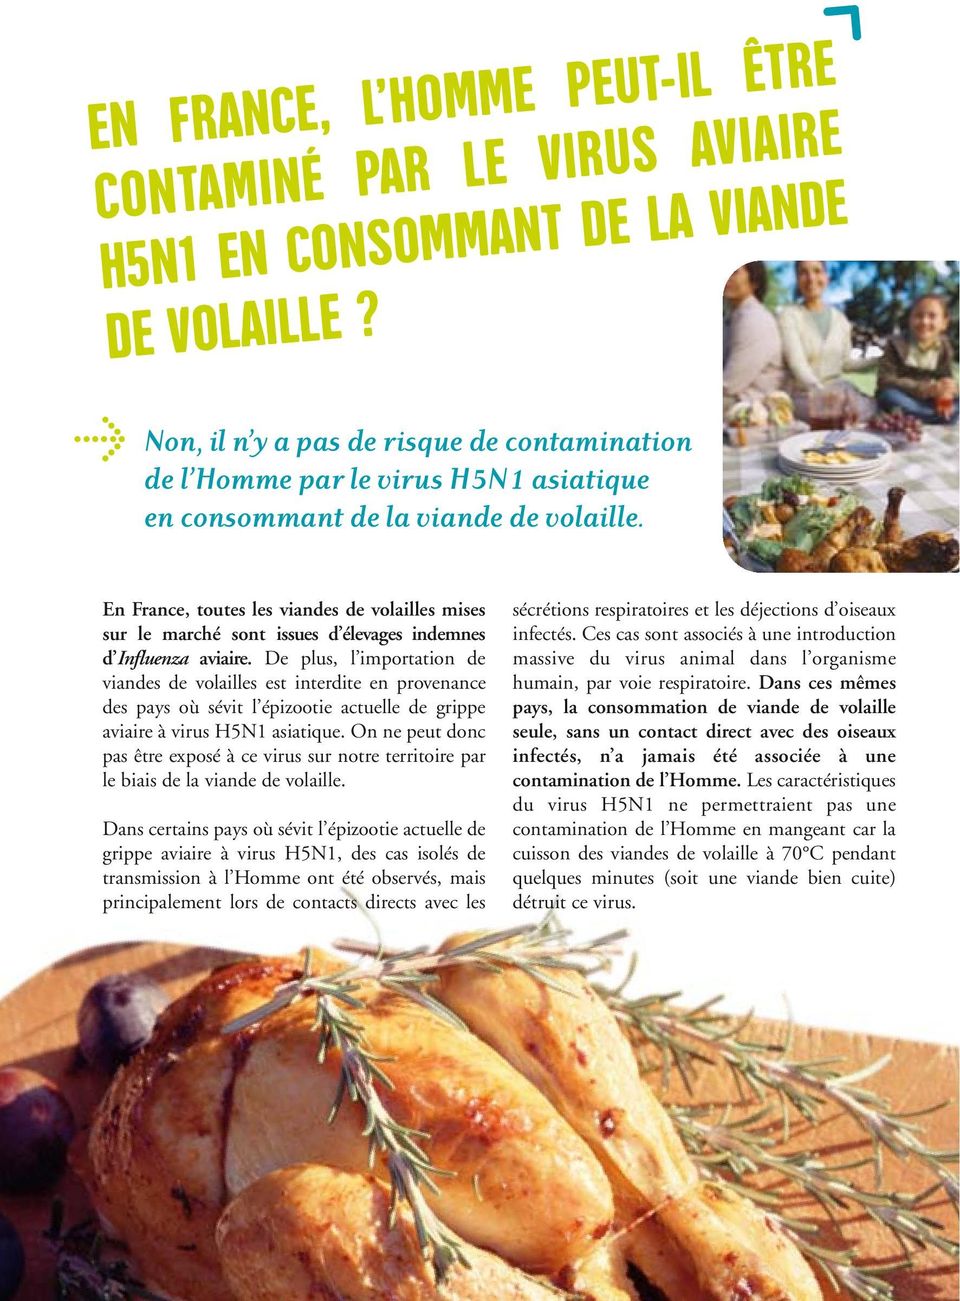 En France, toutes les viandes de volailles mises sur le marché sont issues d élevages indemnes d Influenza aviaire.